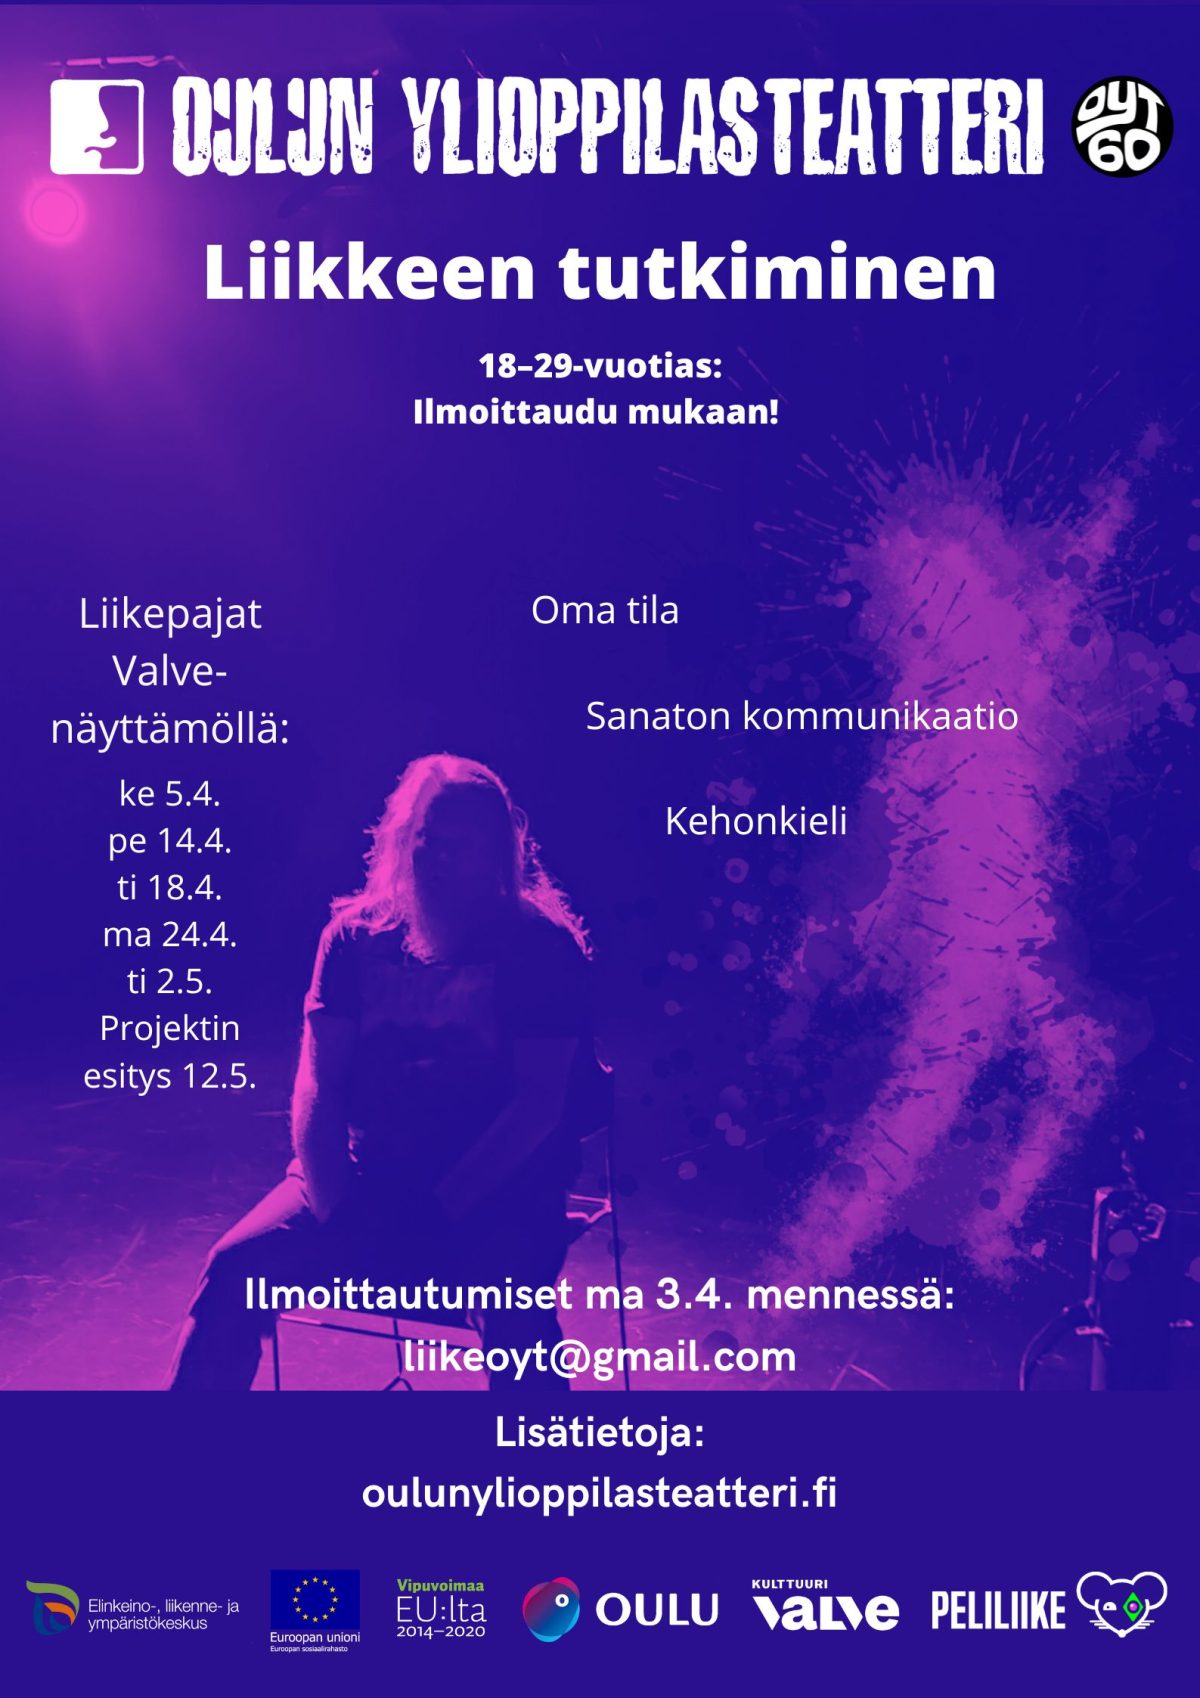 Oulun ylioppilasteatterin Liikkeen tutkiminen -työpajojen mainos.